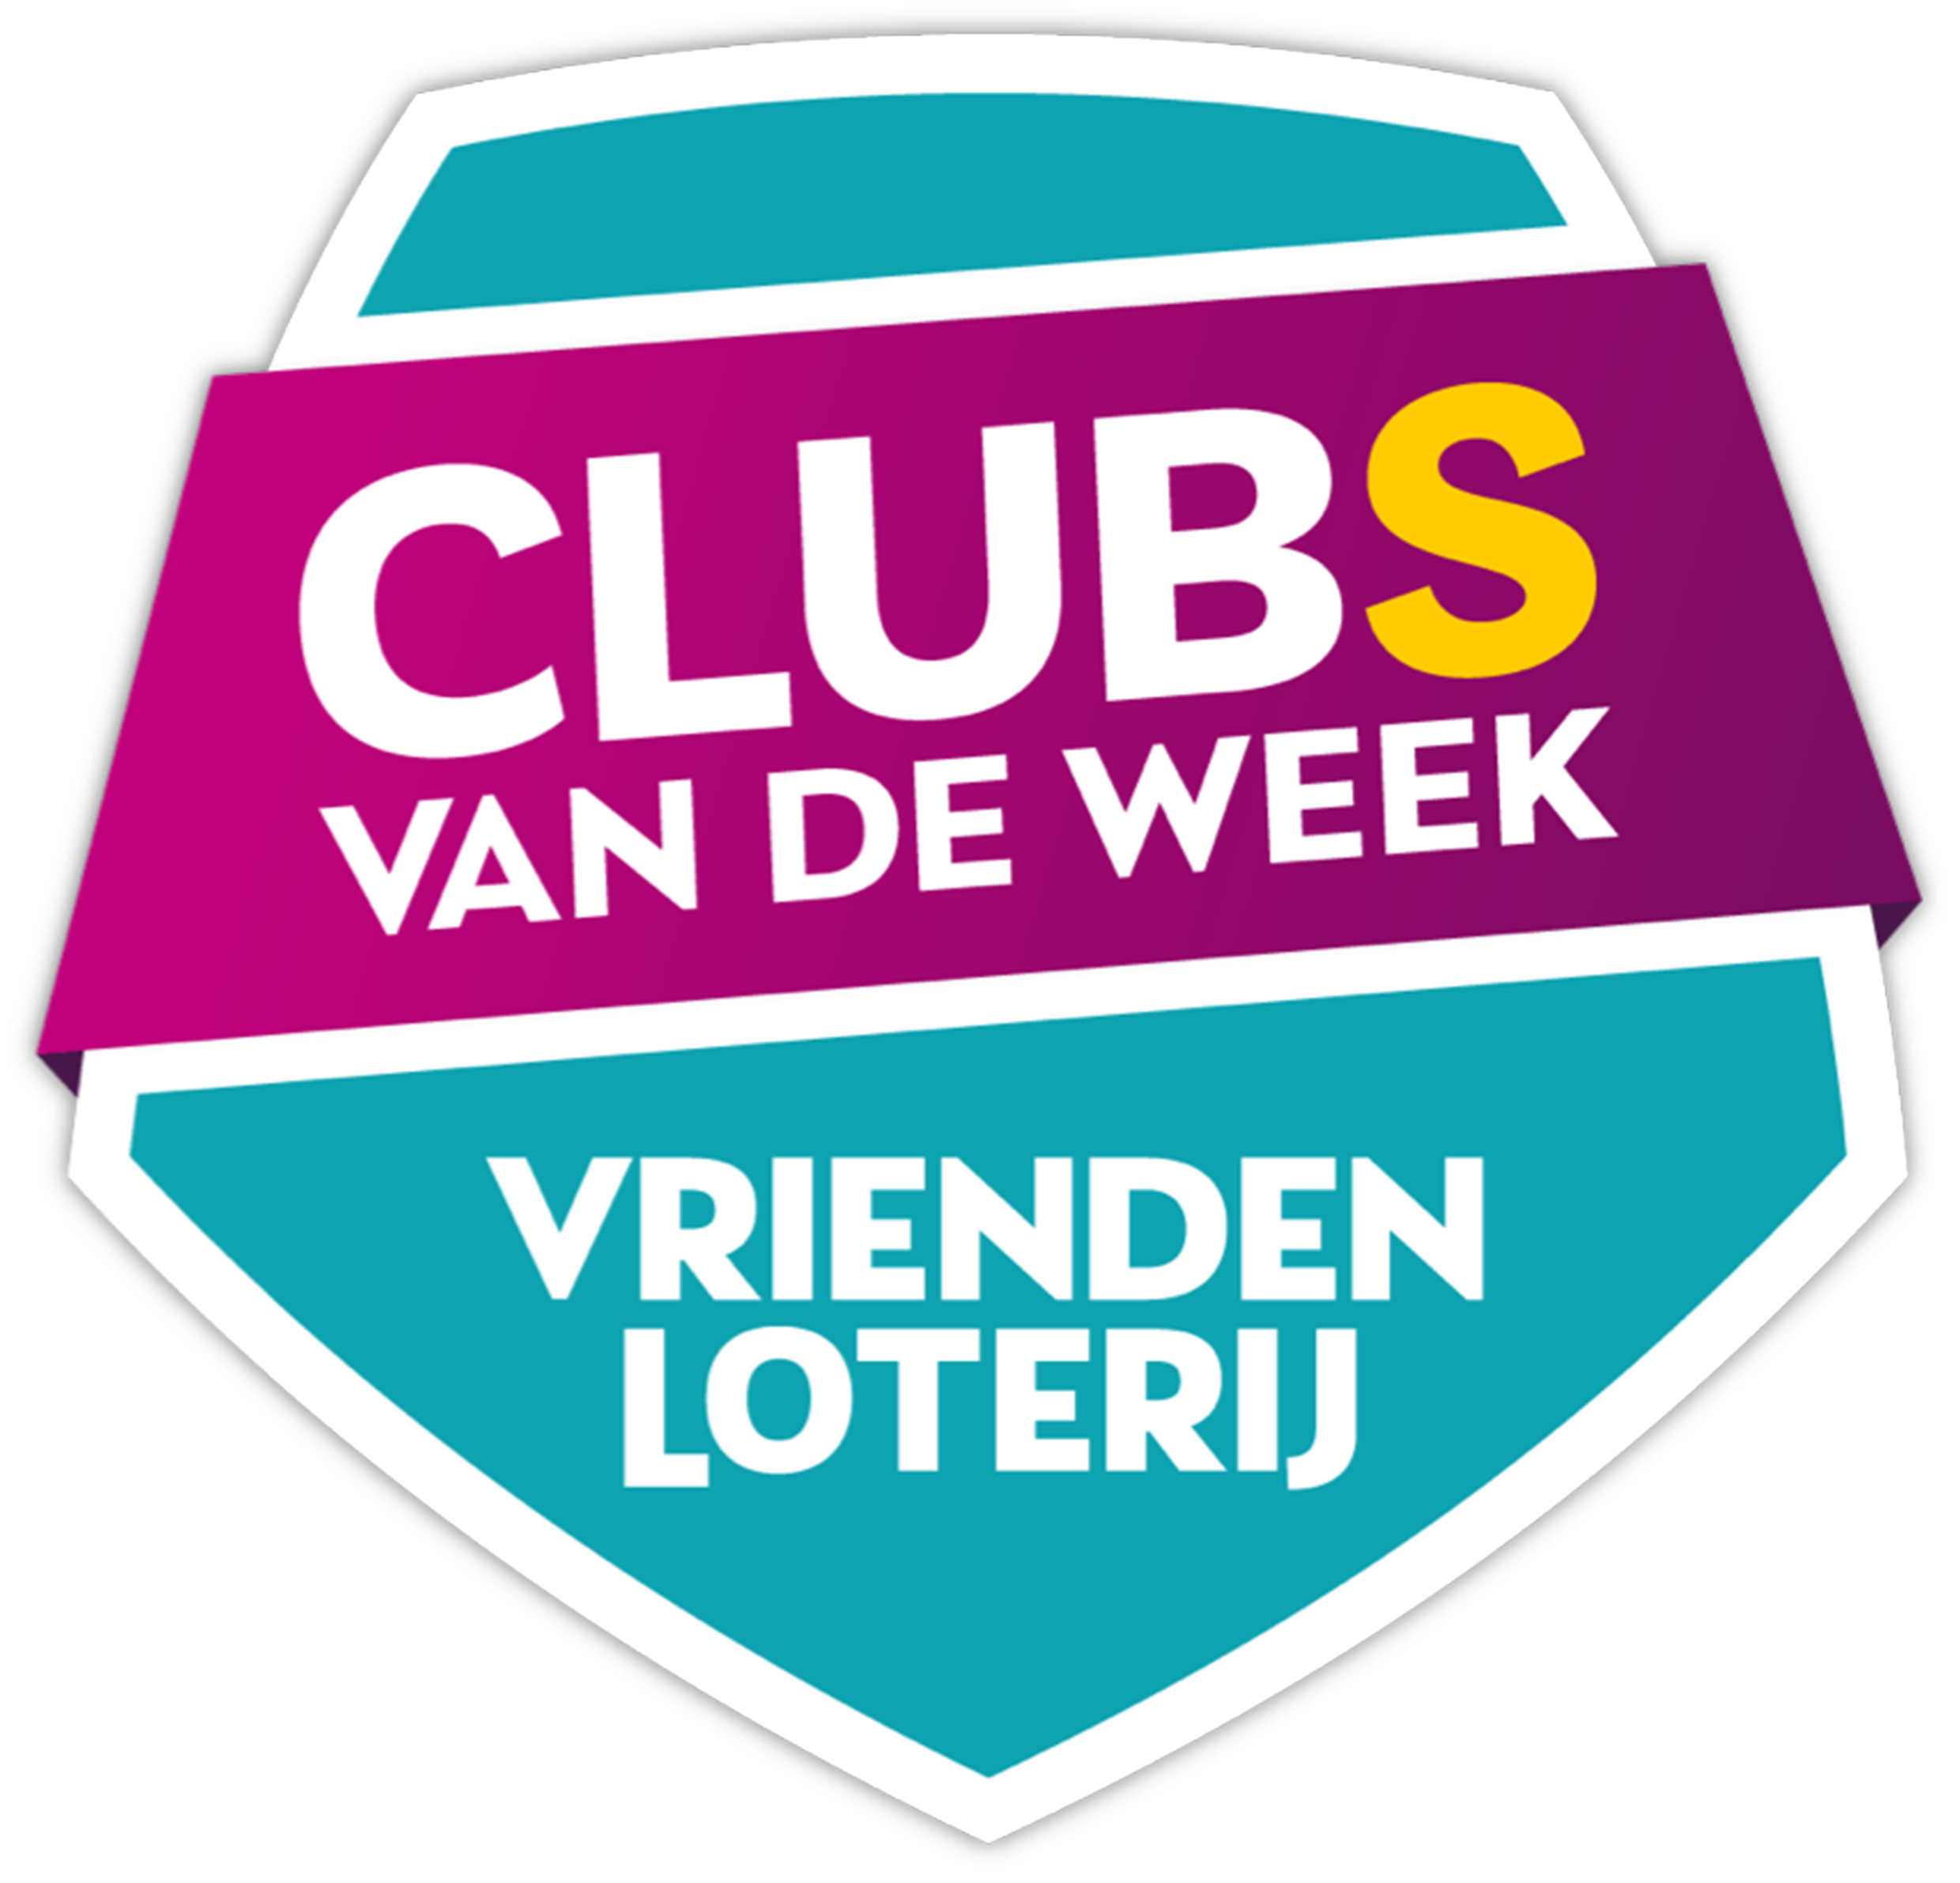 VriendenLoterij clubs van de Week - logo